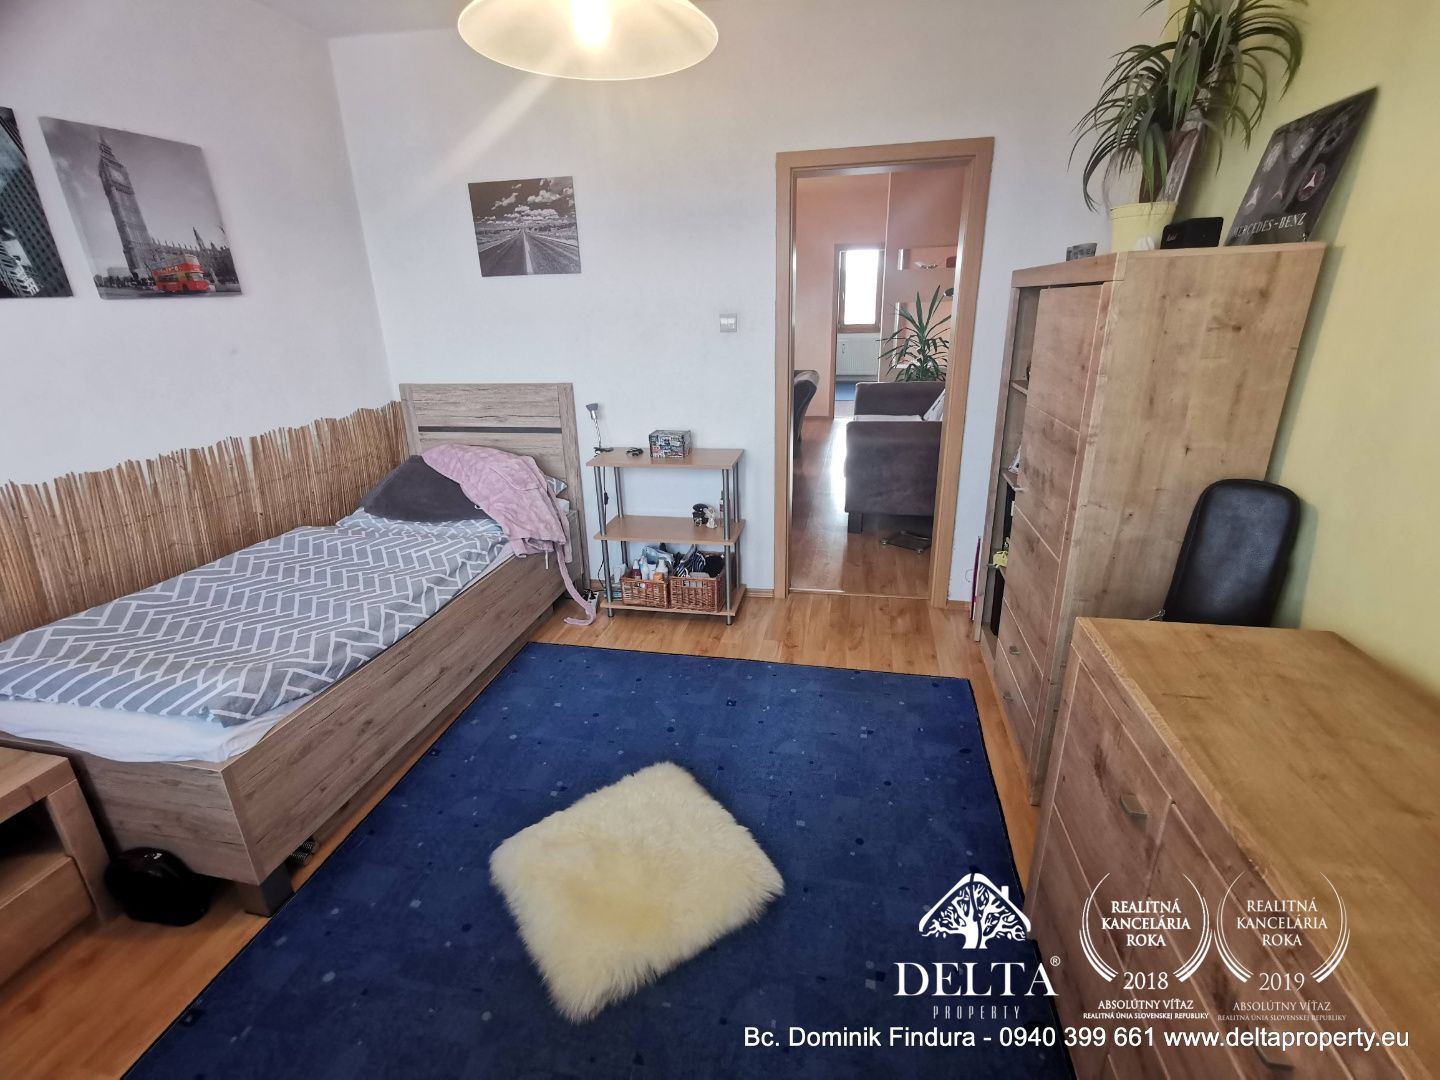 REZERVOVANÉ - Krásny 4-izbový byt s loggiou a malebným výhľadom na Tatry v centre